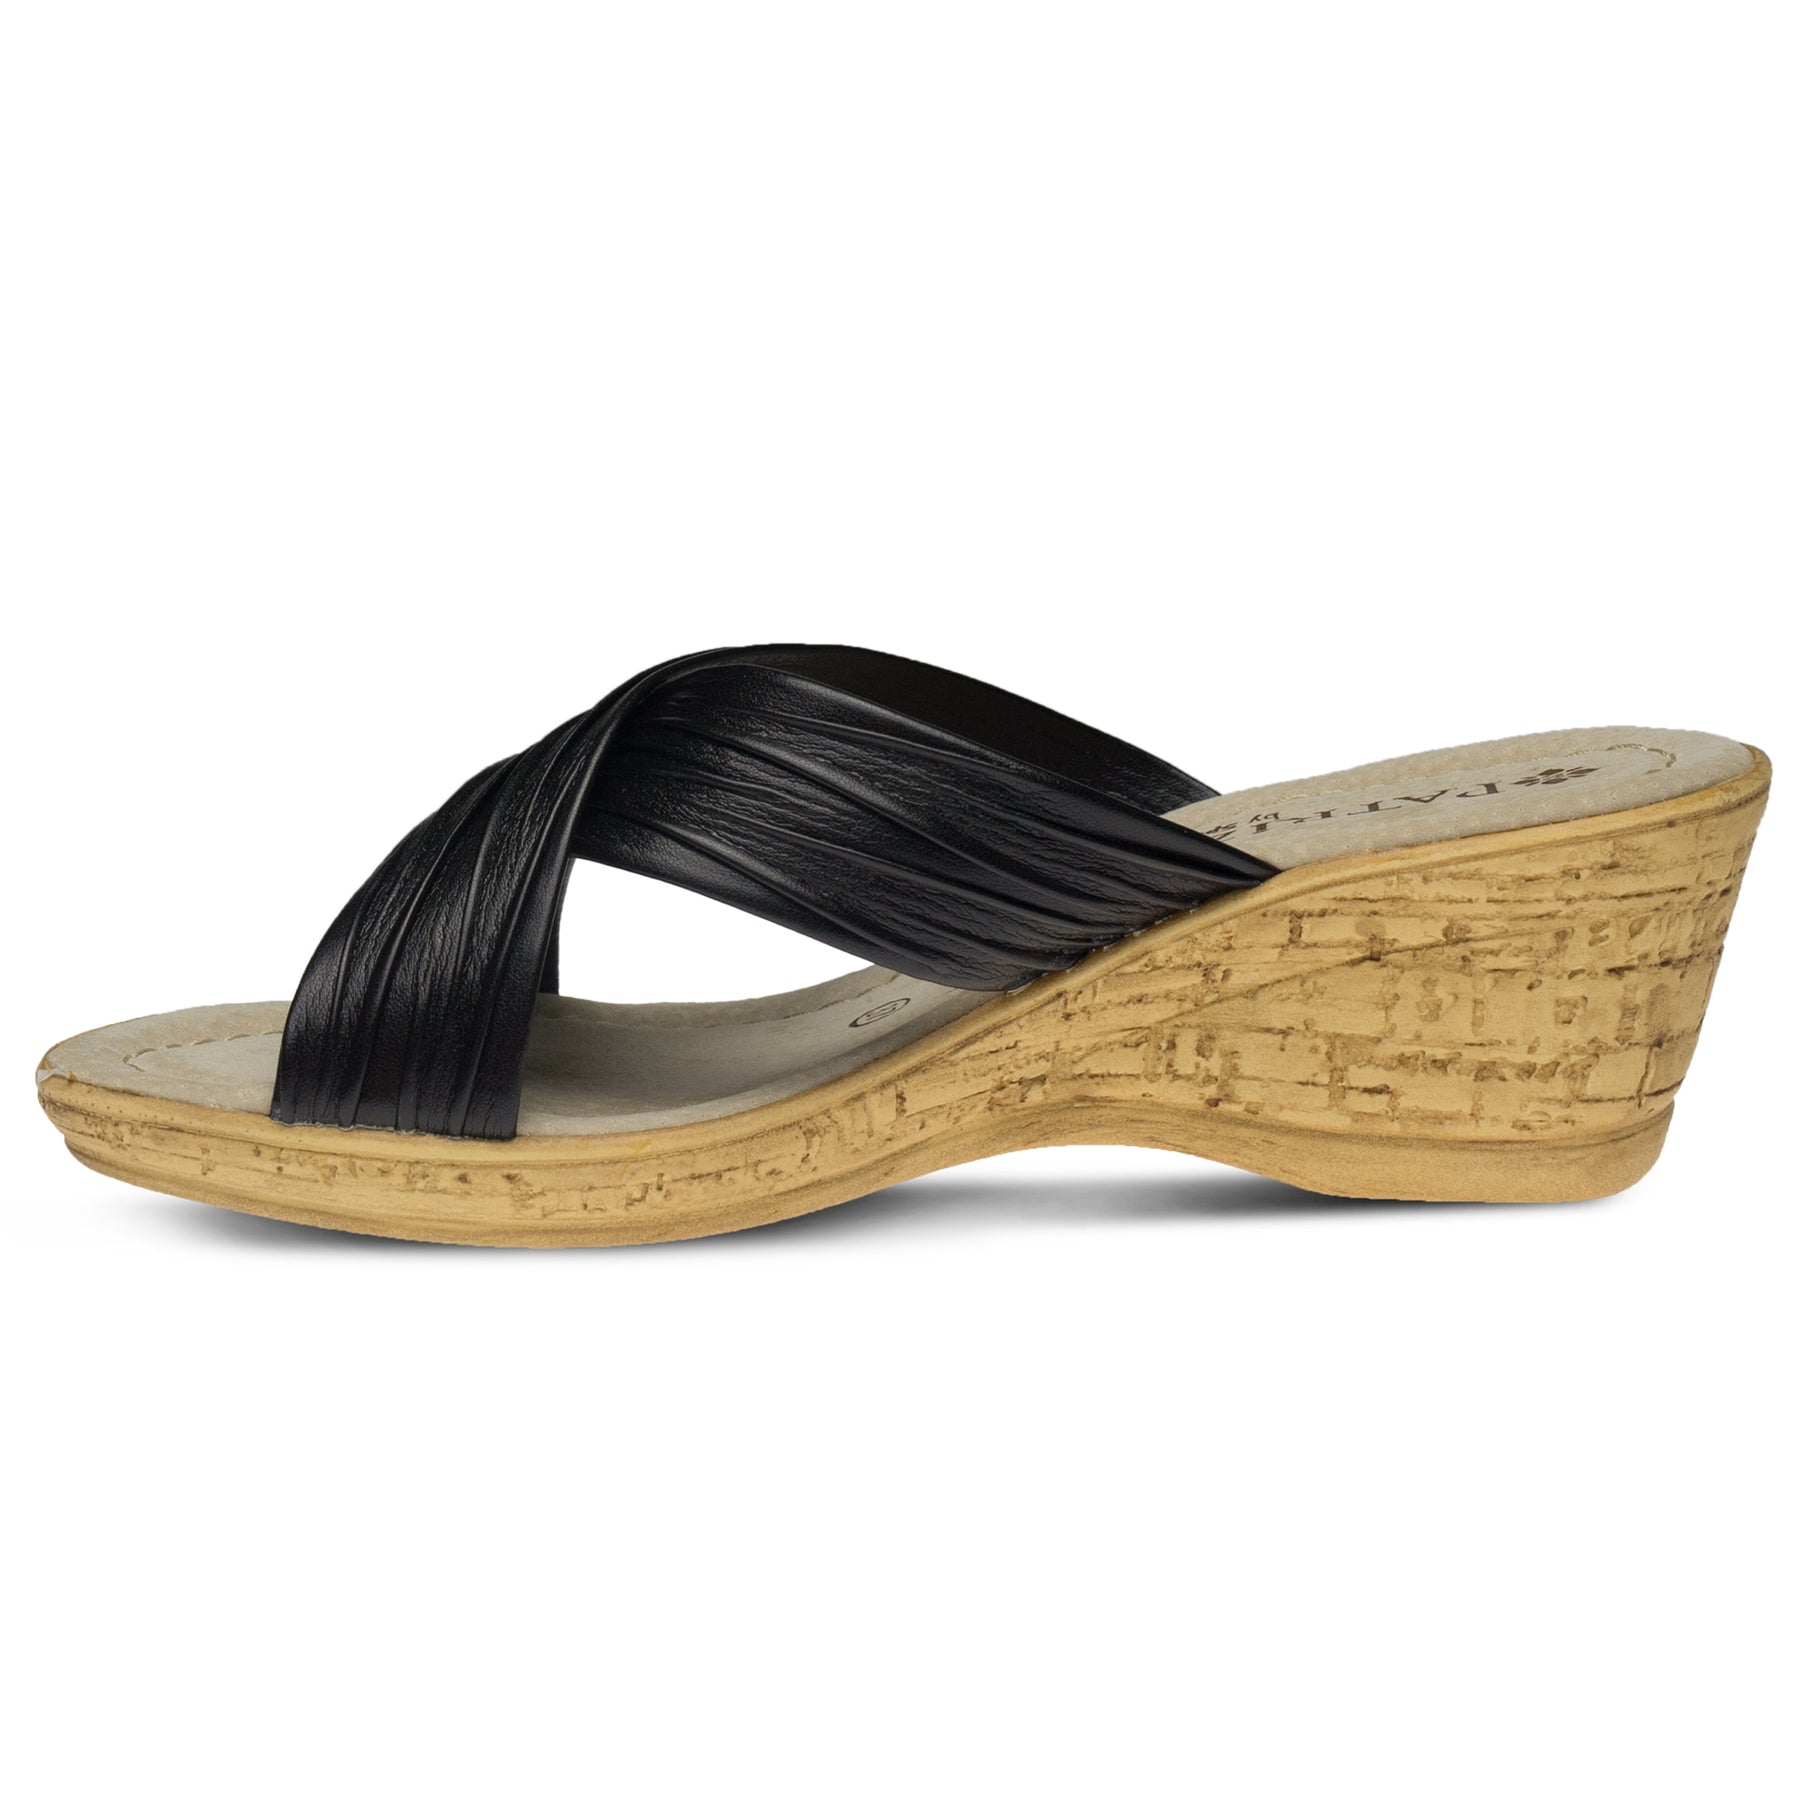 Patrizia Marge Slide Sandal: Cork Wedge Heels – Spring Step Shoes